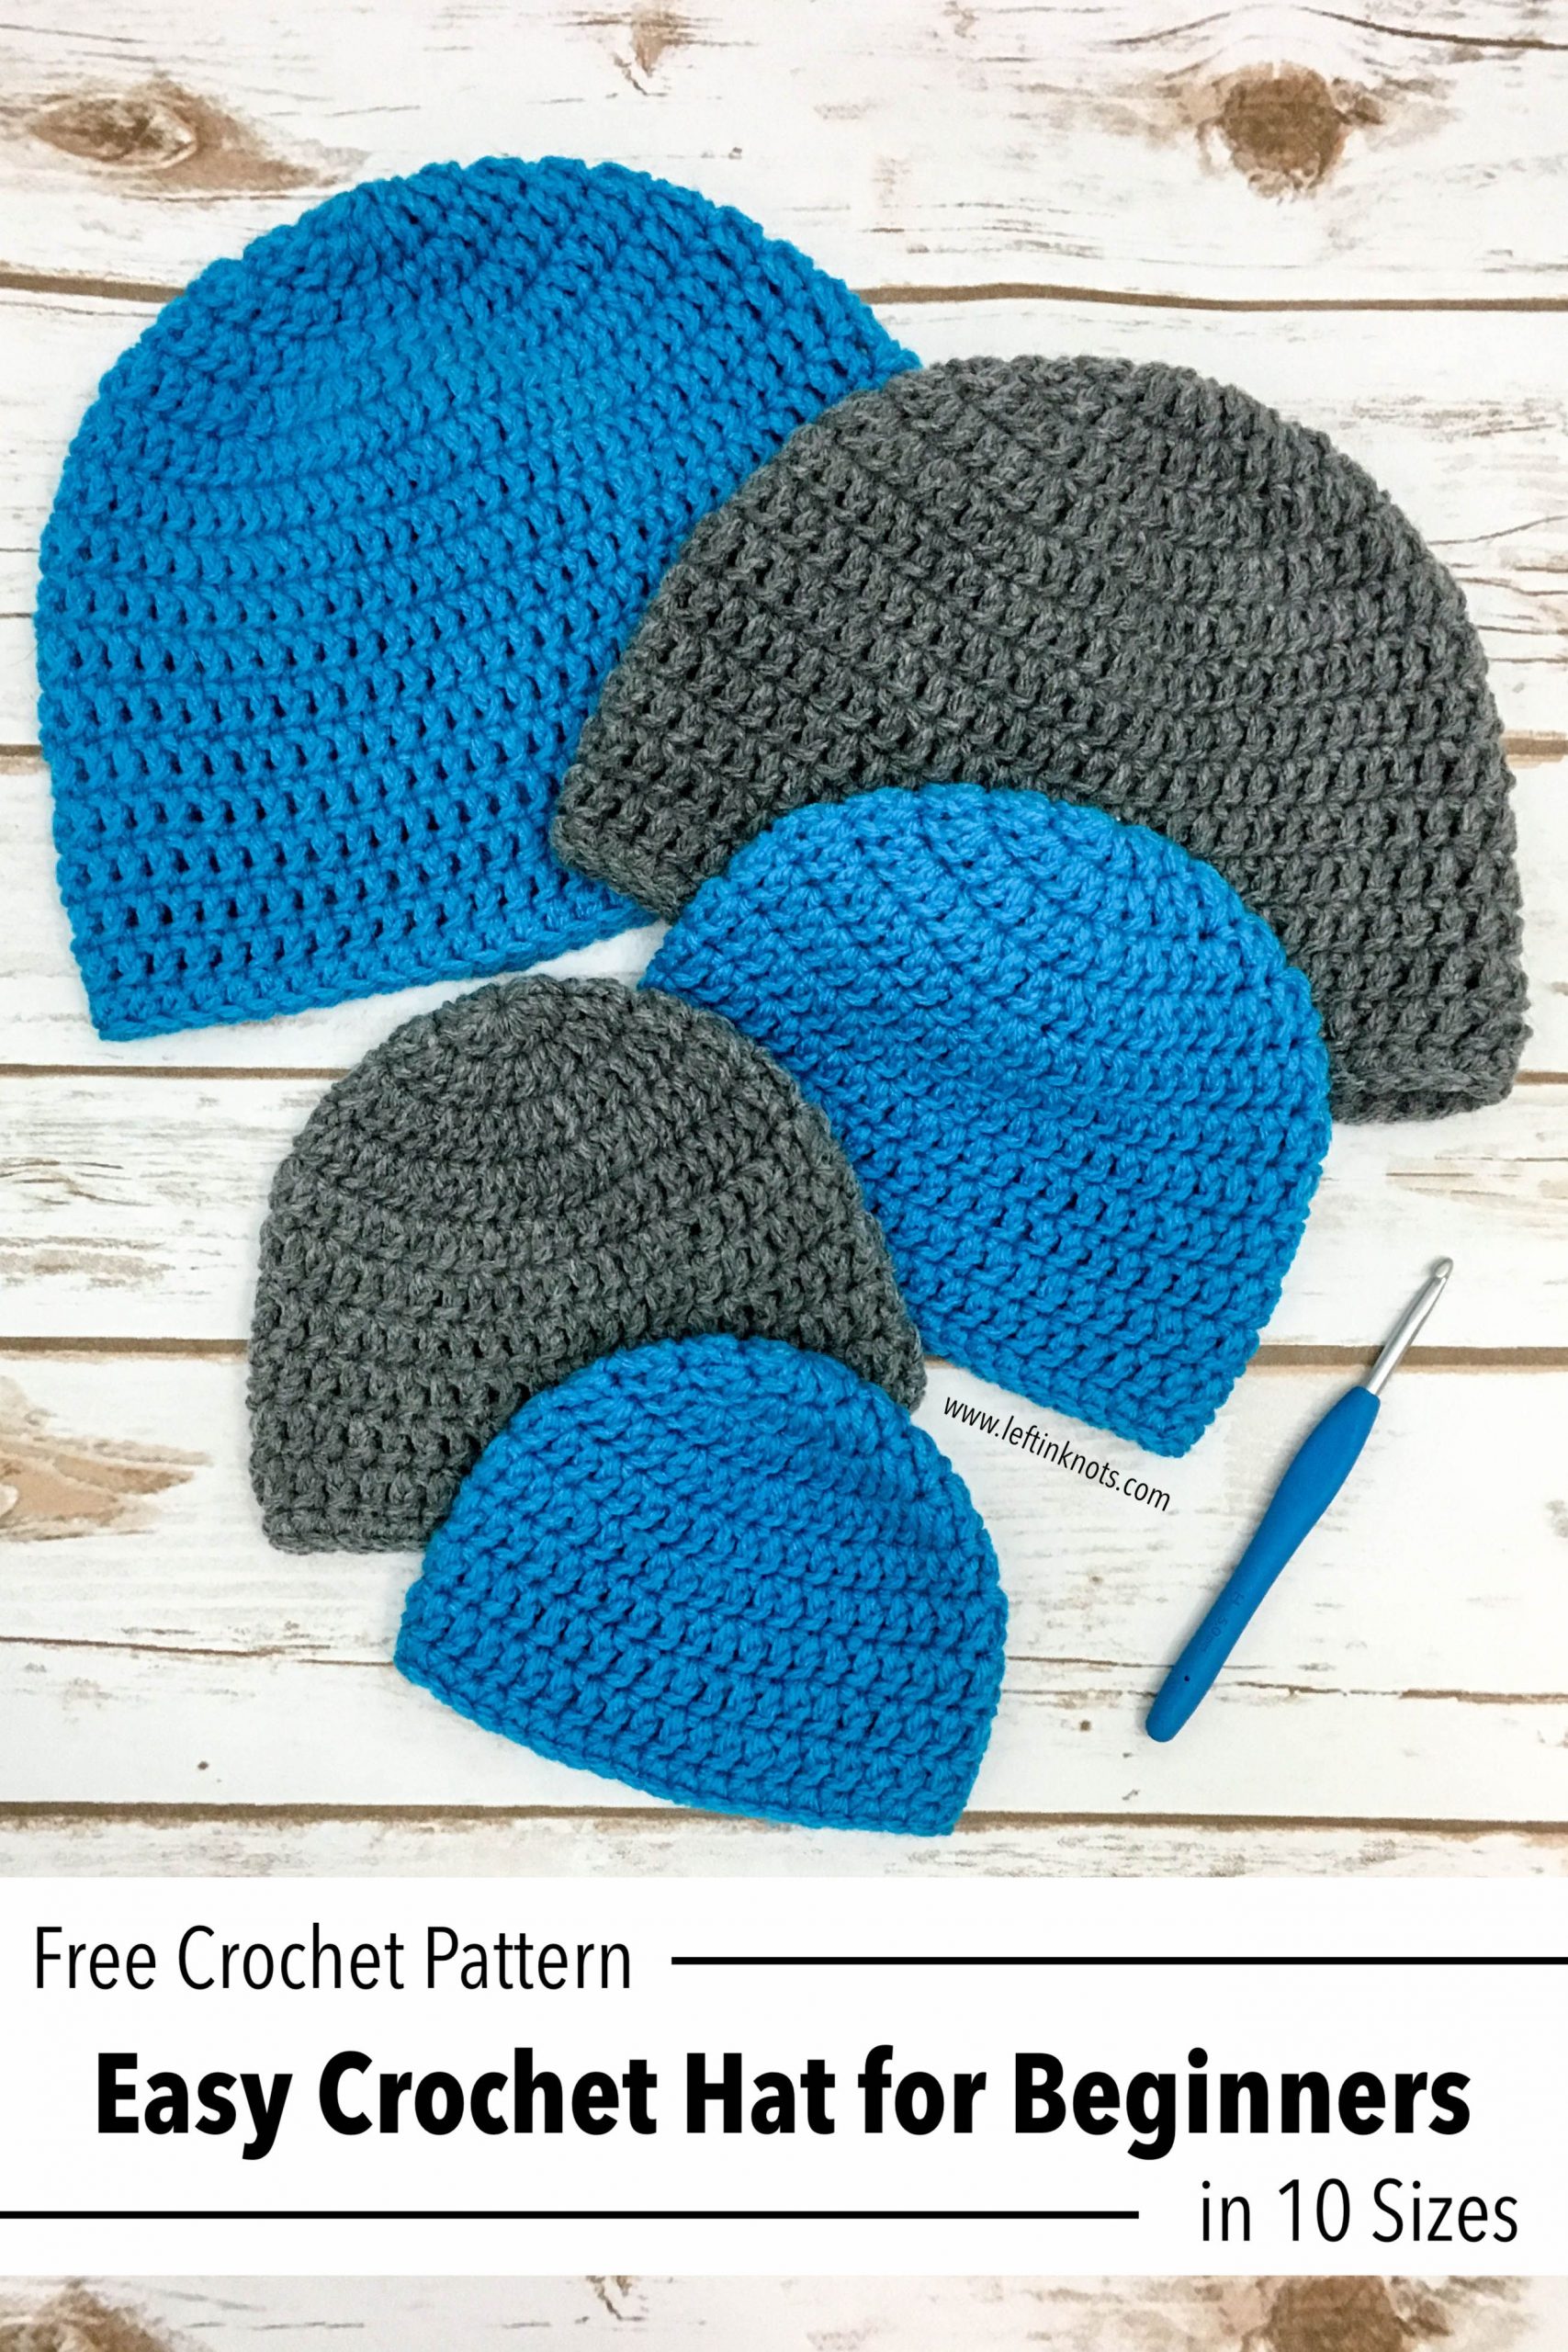 Crochet-Hat-in-10-Sizes-Free-Pattern.jpg